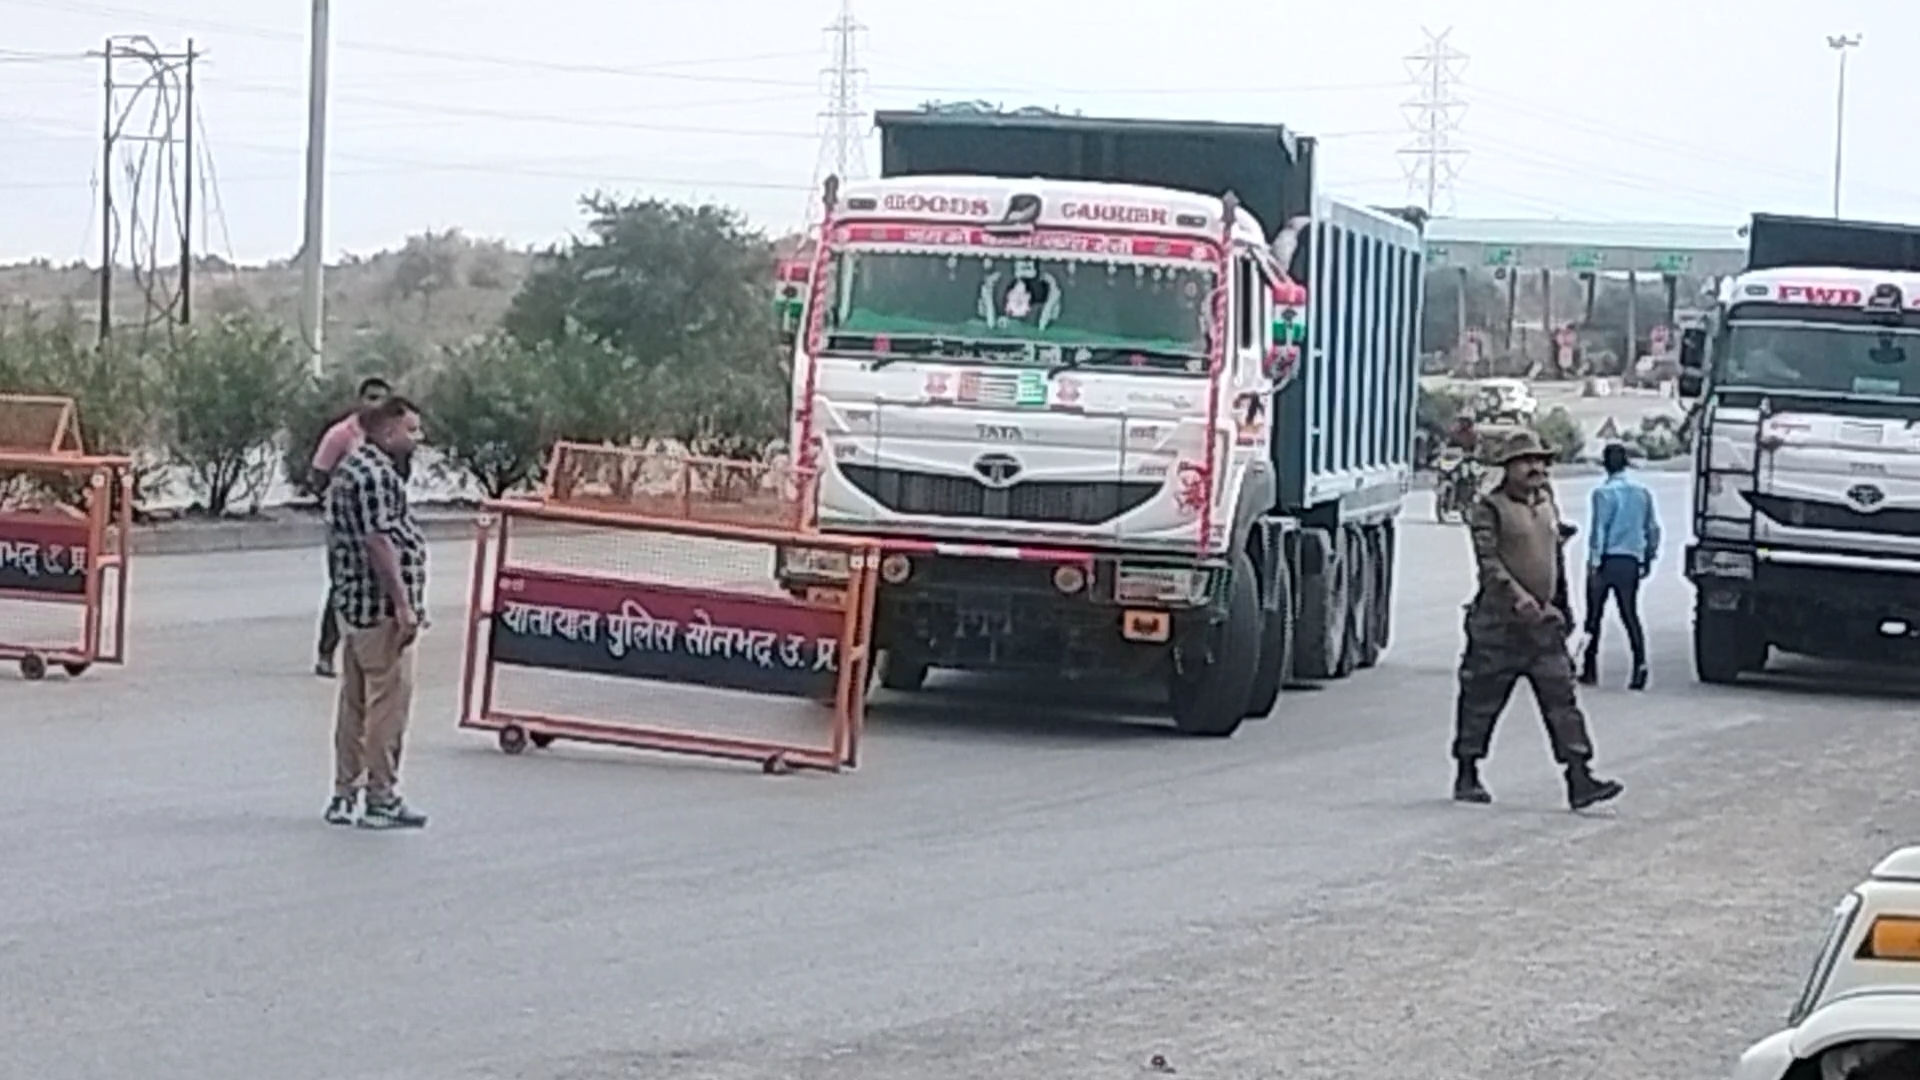 सोनभद्र के लोढ़ी टोल प्लाजा पर खनिज विभाग की टीम की जांच के कारण खड़े ट्रक